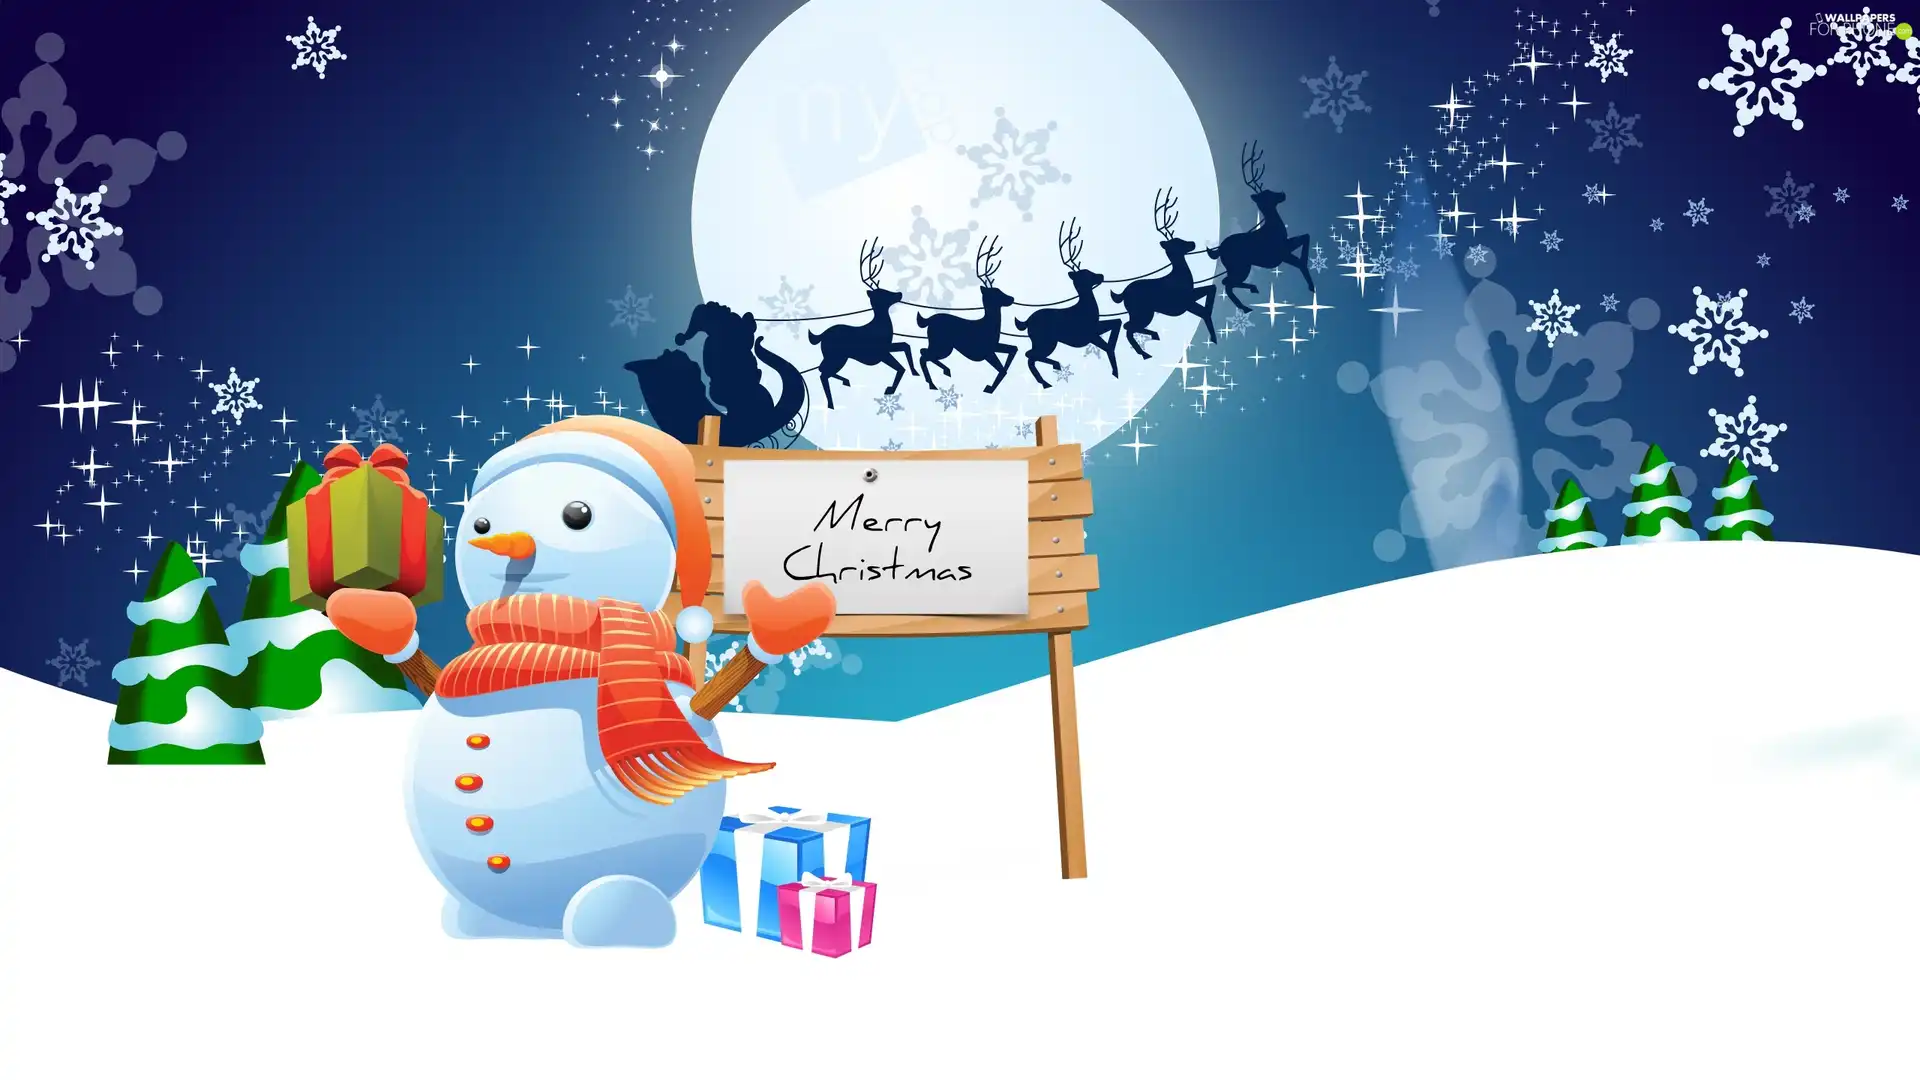 reindeer, snow, gifts, Santa, Snowman